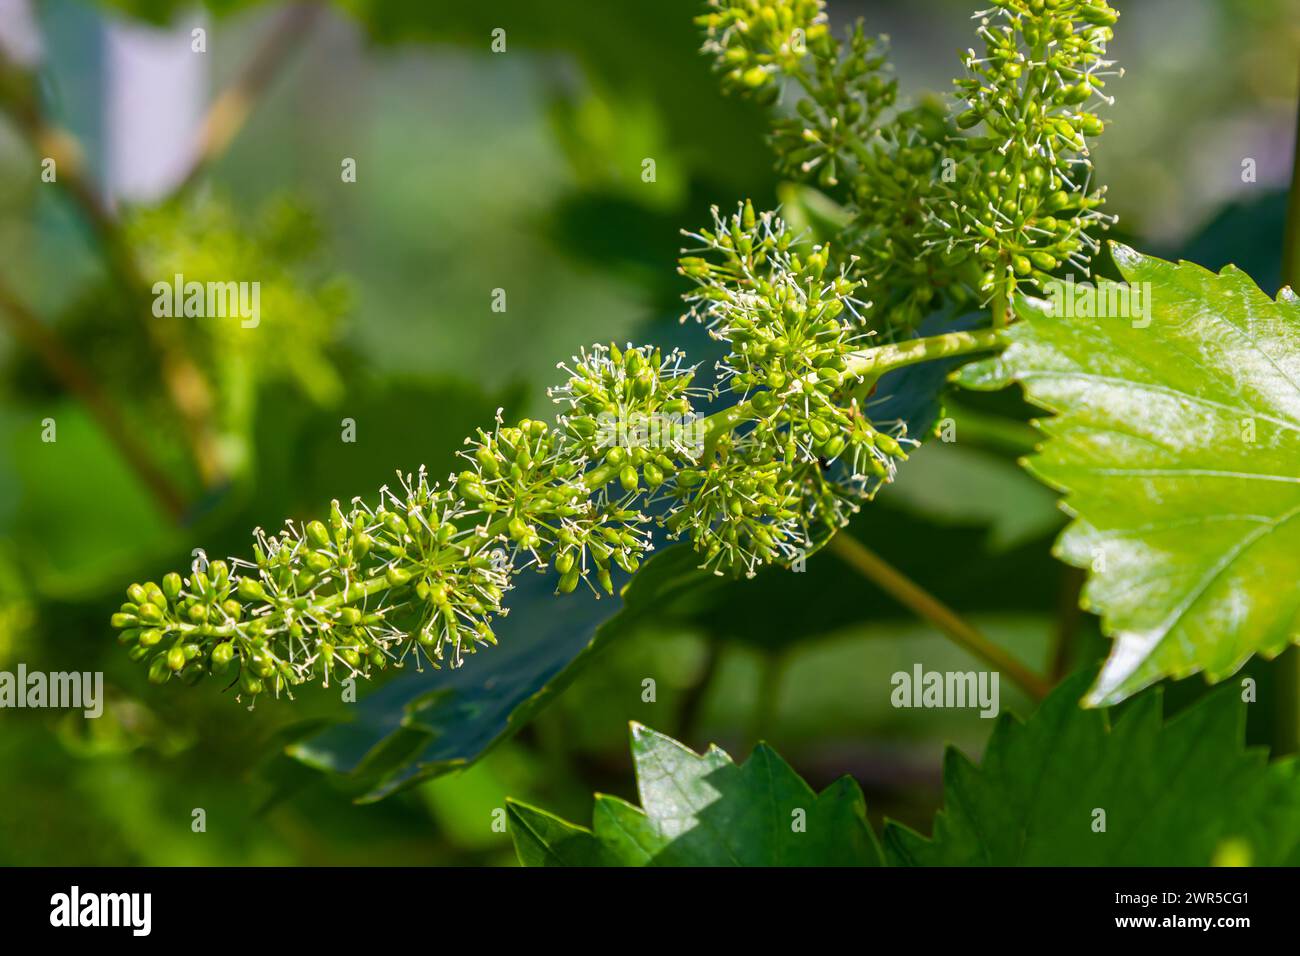 Blütenknospen und Blätter von Triebe Weinstock Frühling, Landwirtschaft Natur Hintergrund. Stockfoto